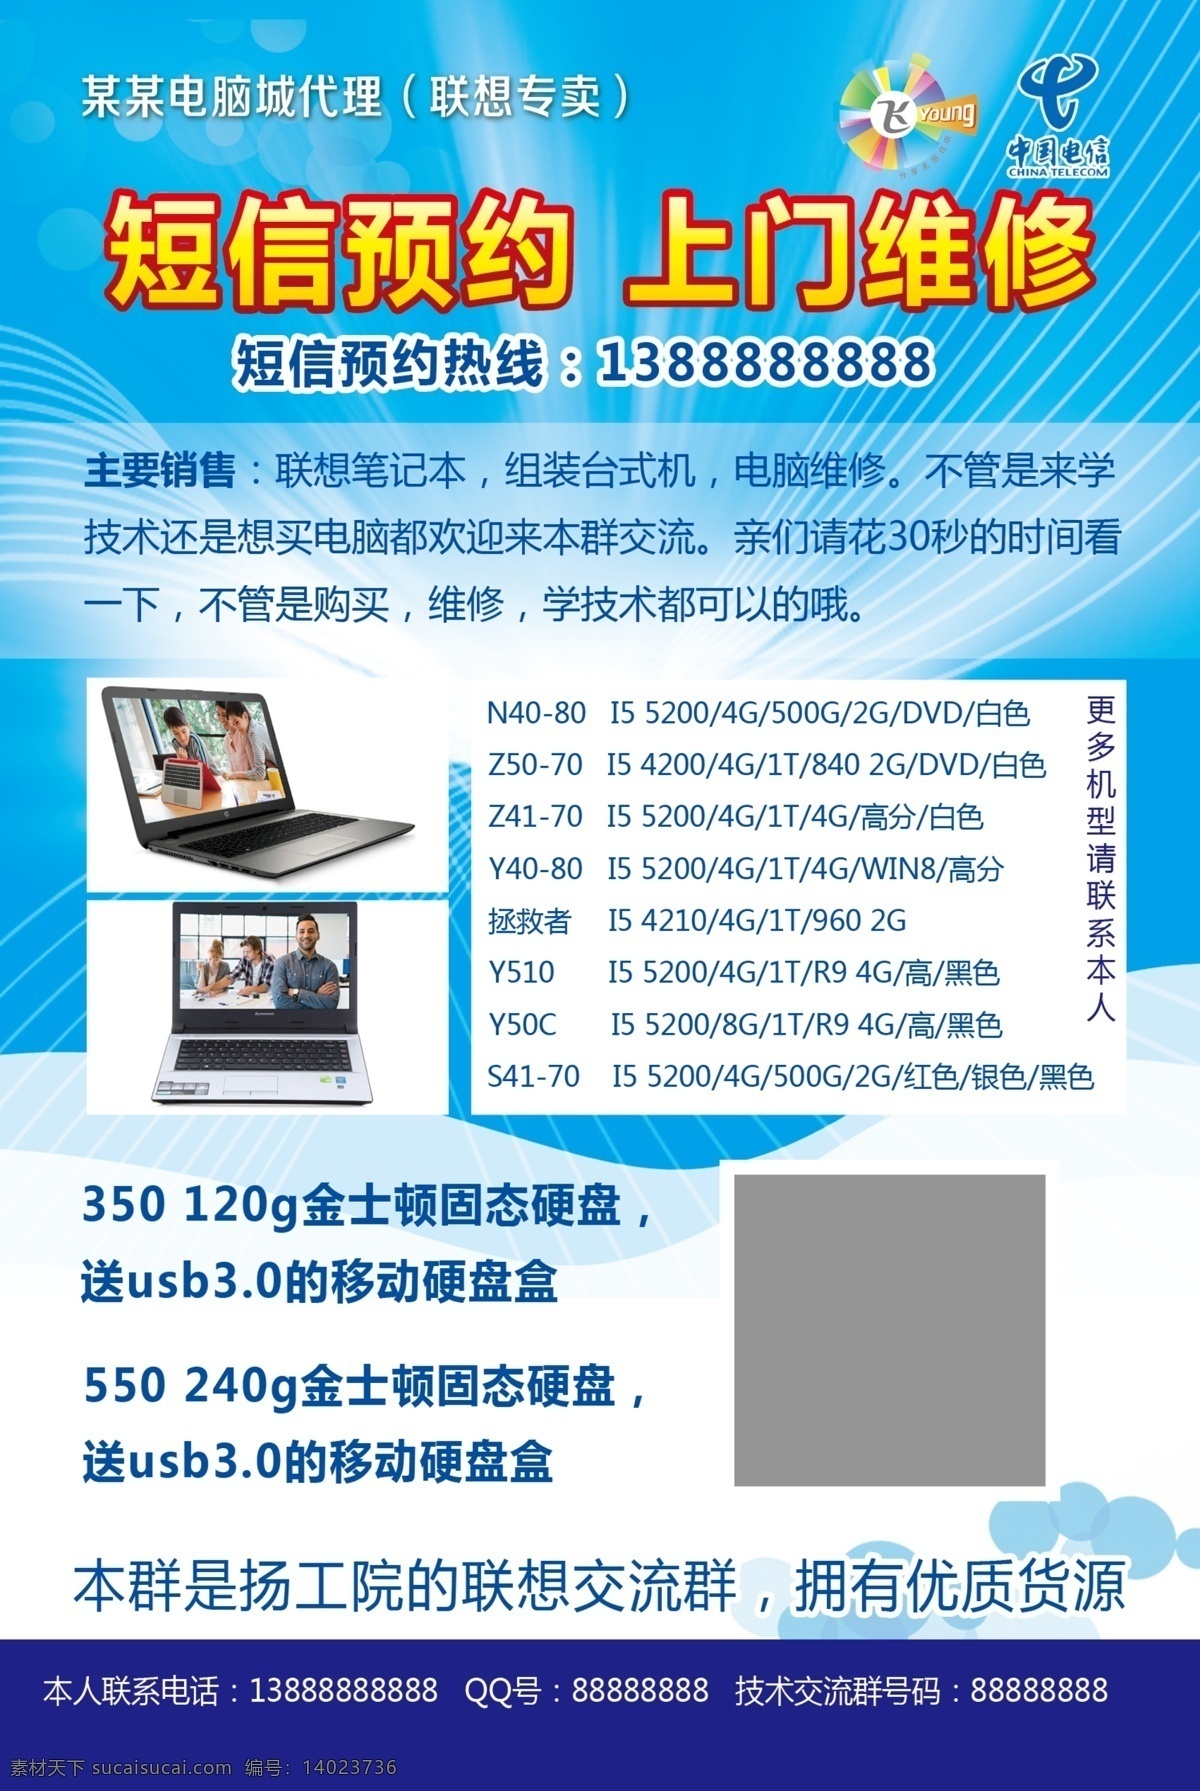 电脑 宣传单 海报 模板 监控宣传单 电脑器材 电脑宣传单 电脑彩页 彩页背景 蓝色背景 台式主机 笔记本